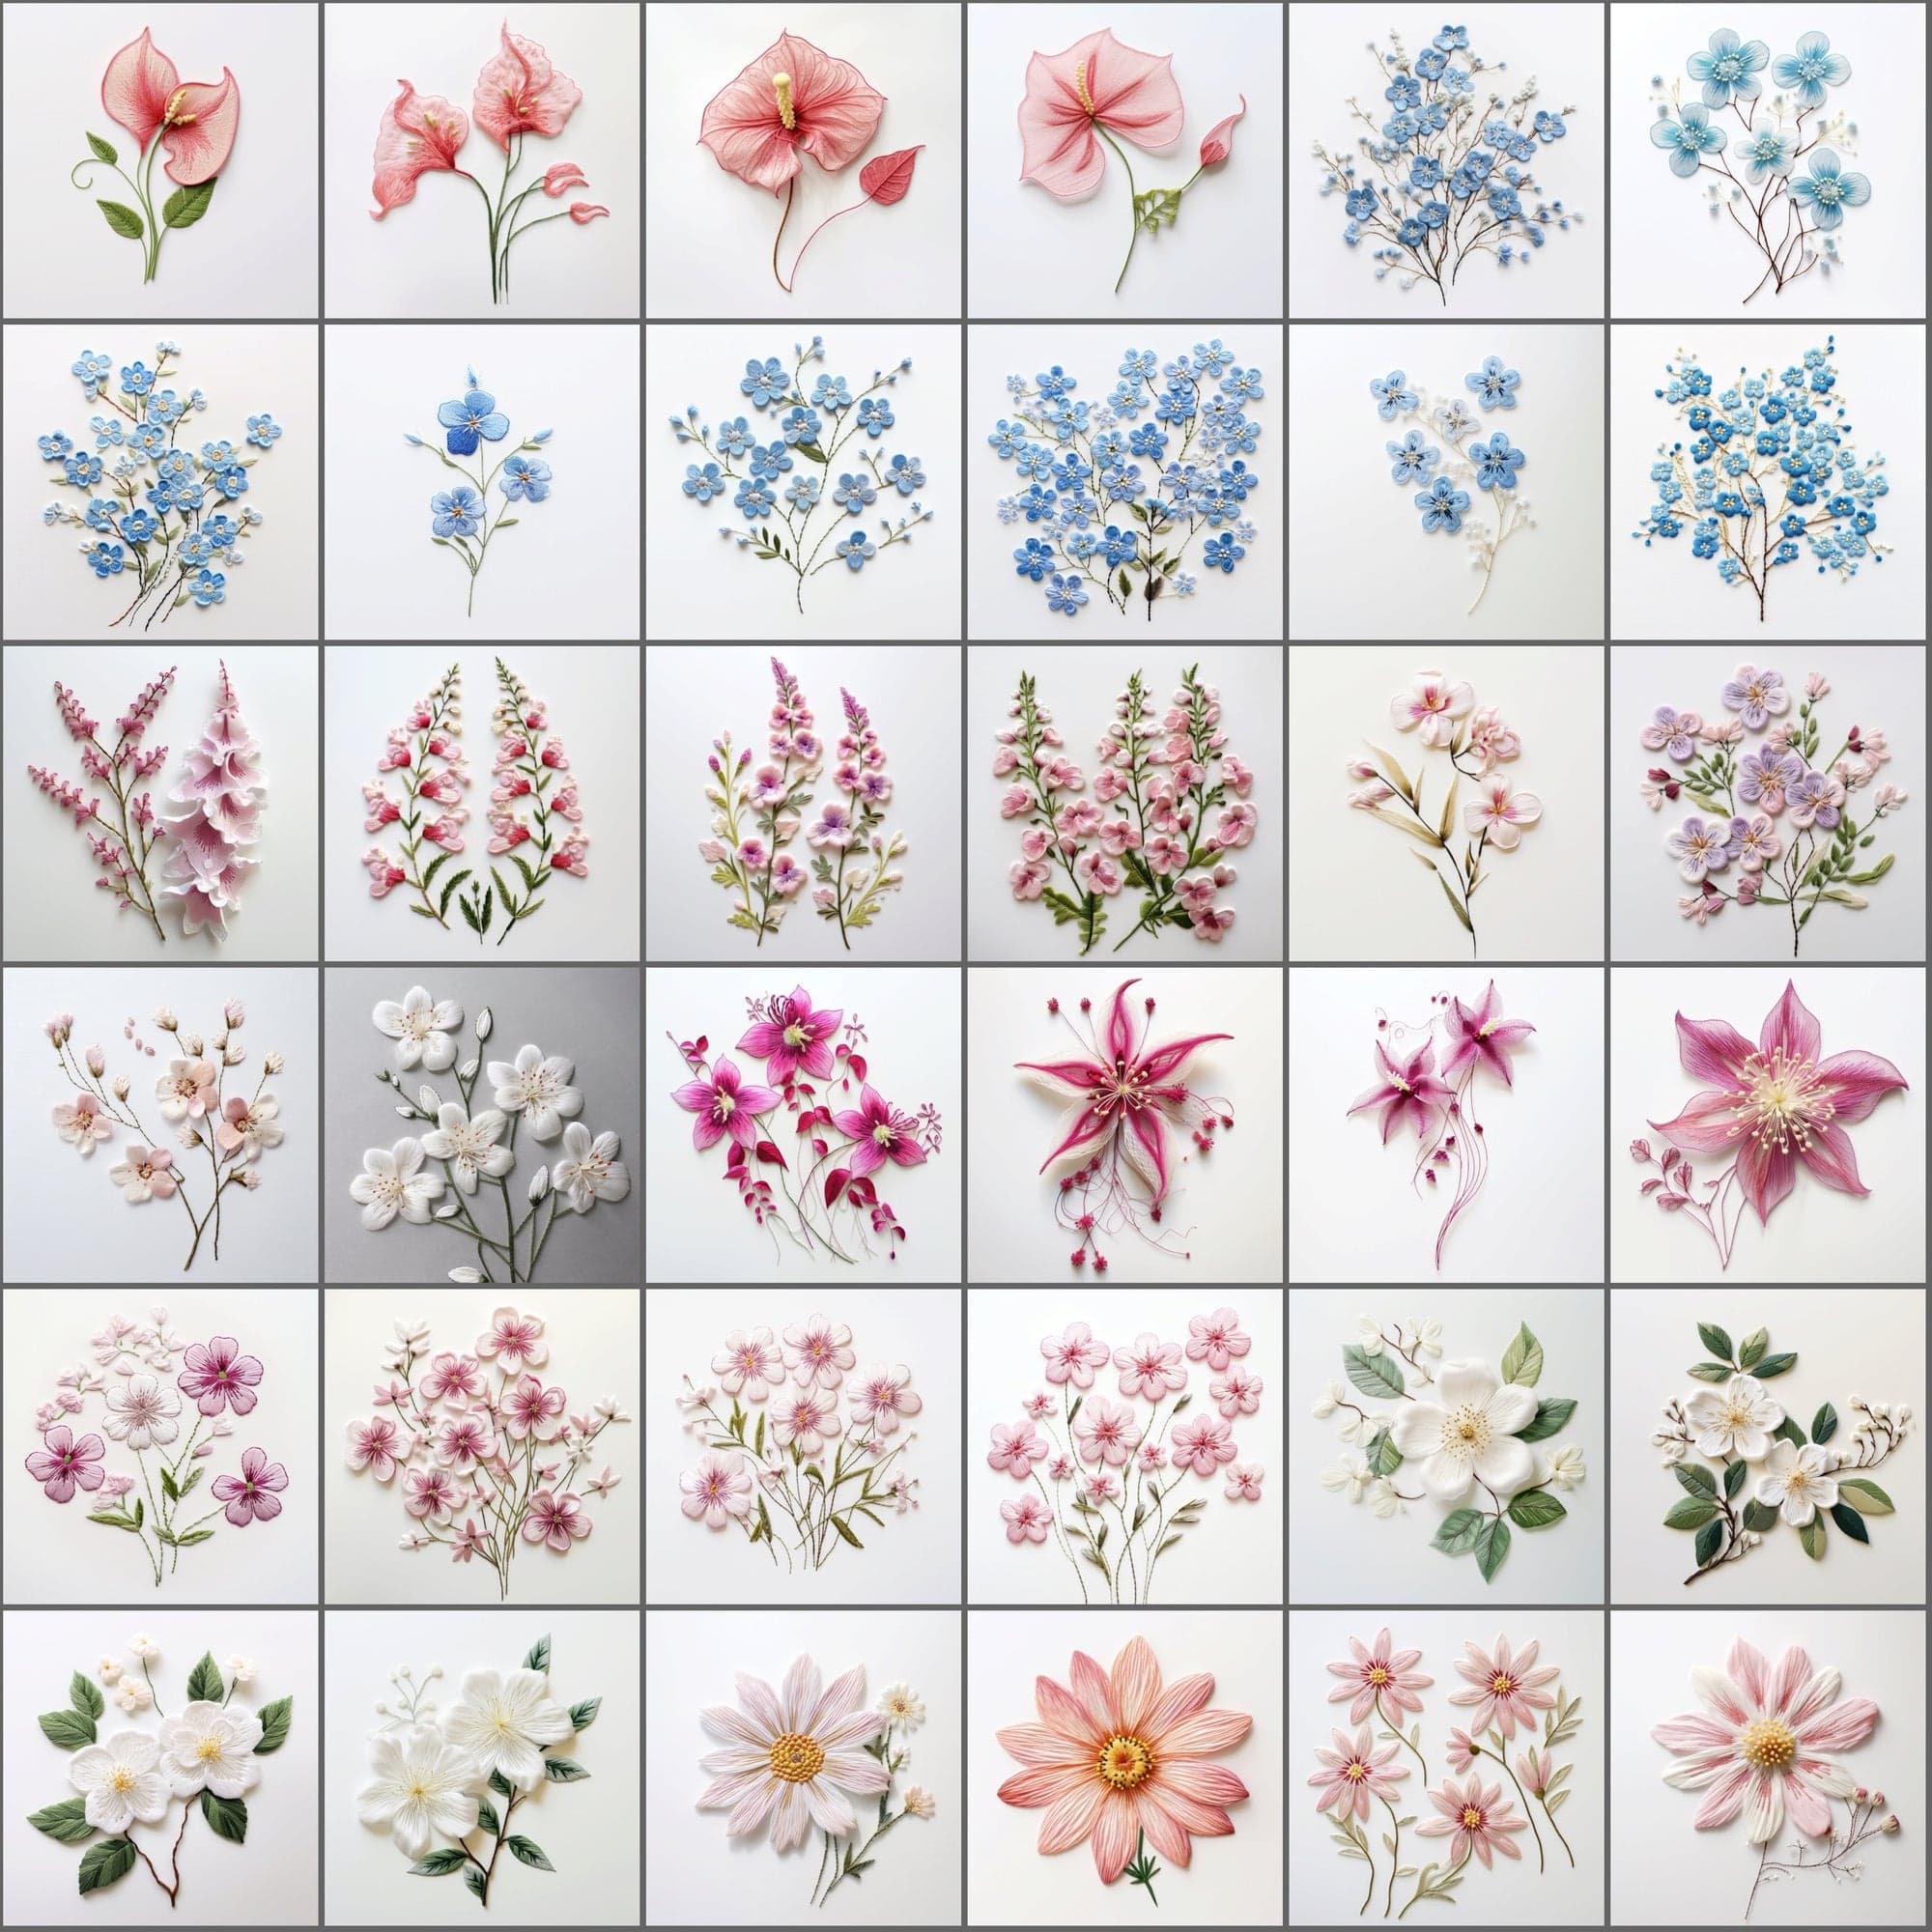 390 Floral & Embroidery Designs Bundle Sumobundle